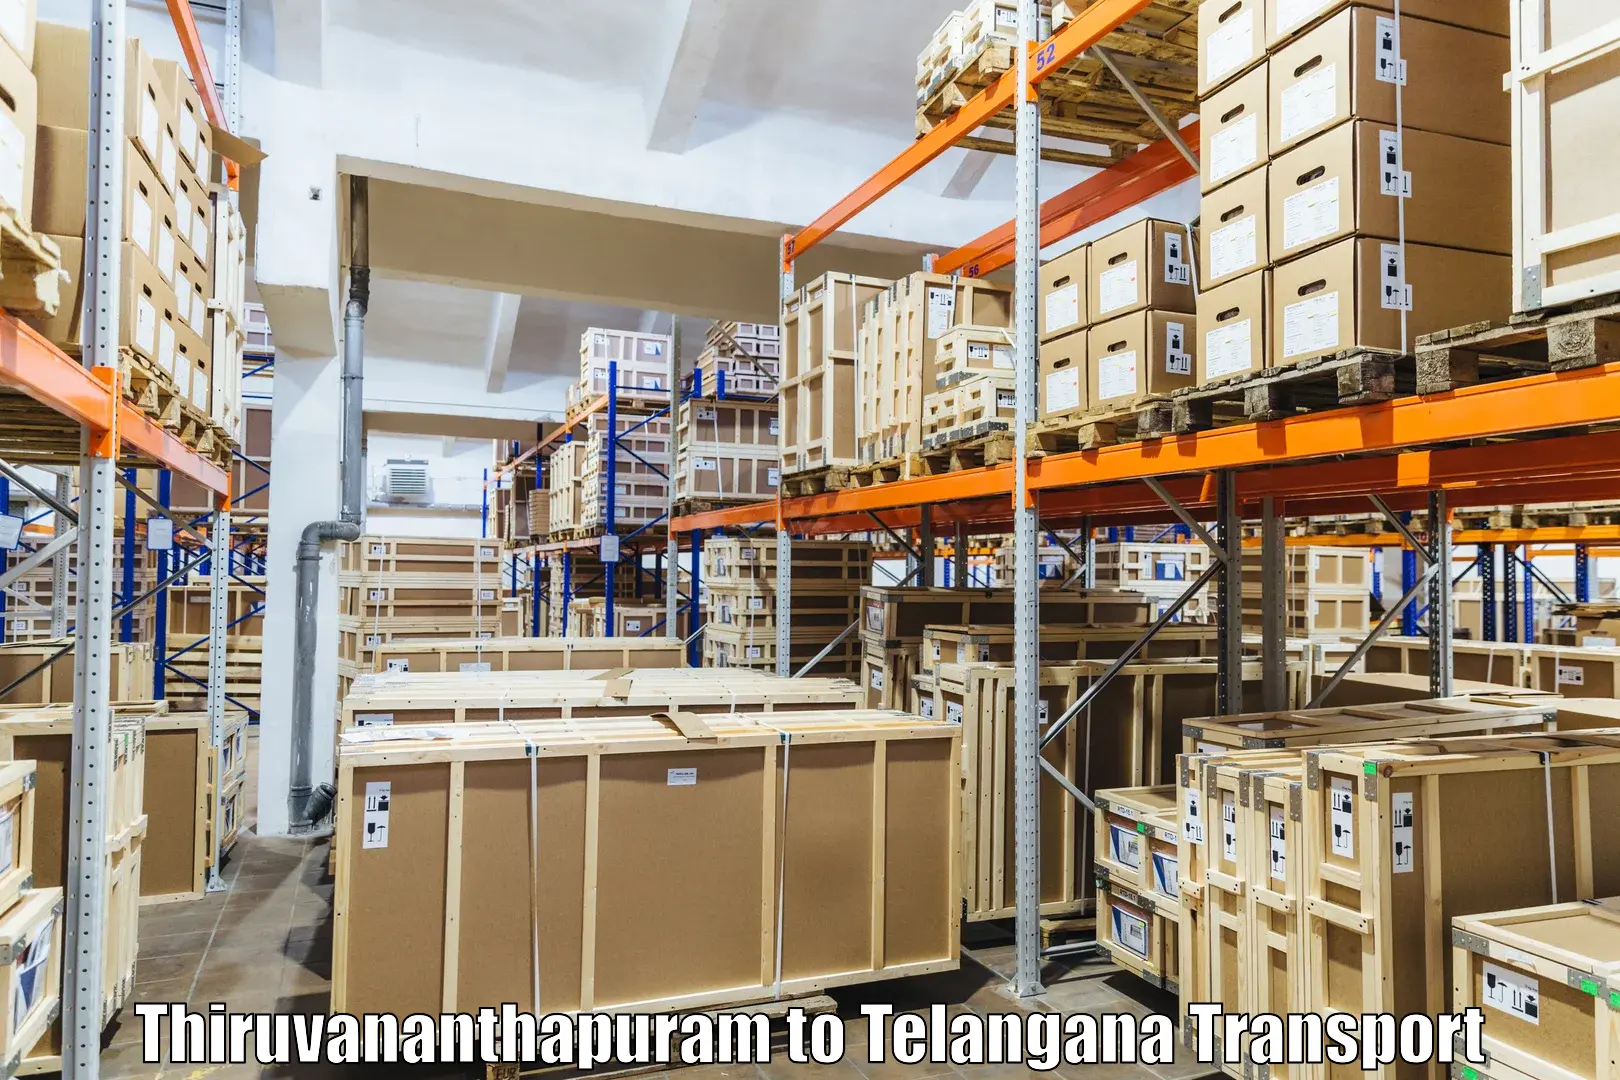 Road transport online services Thiruvananthapuram to Huzurabad